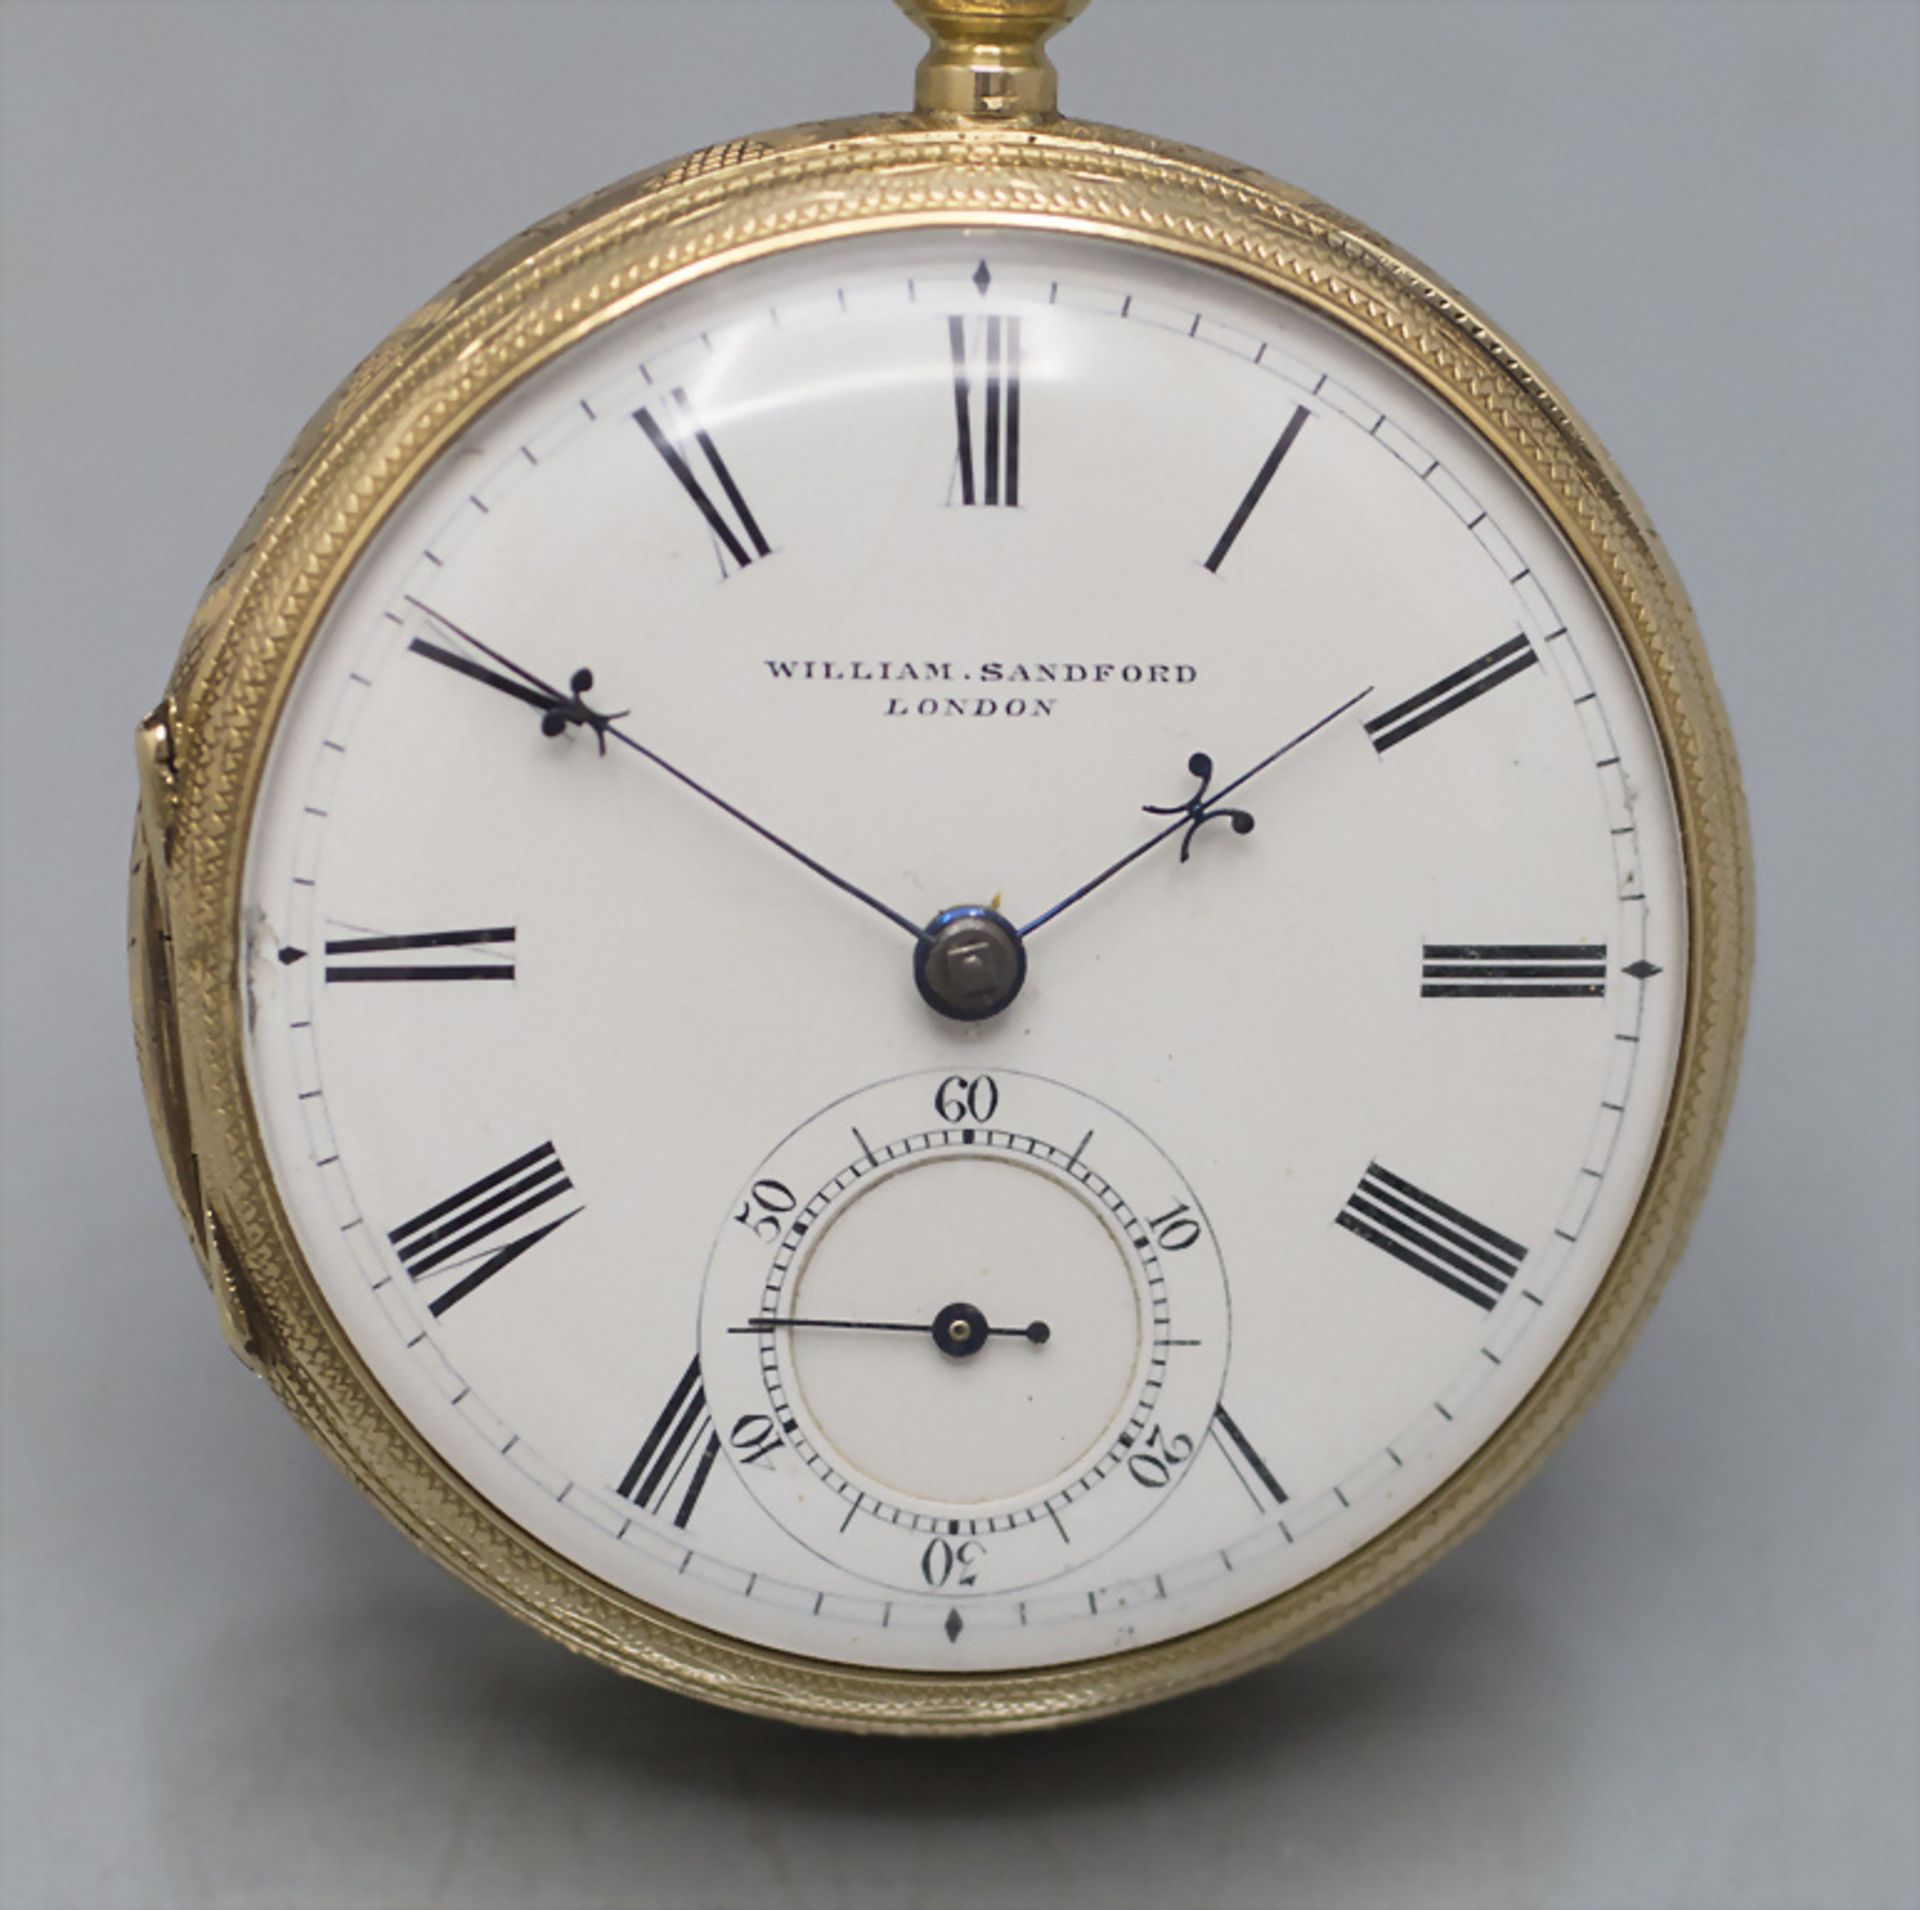 Offene Taschenuhr / An 18 ct gold pocket watch, William Sandford, London, 19. Jh. - Bild 2 aus 14